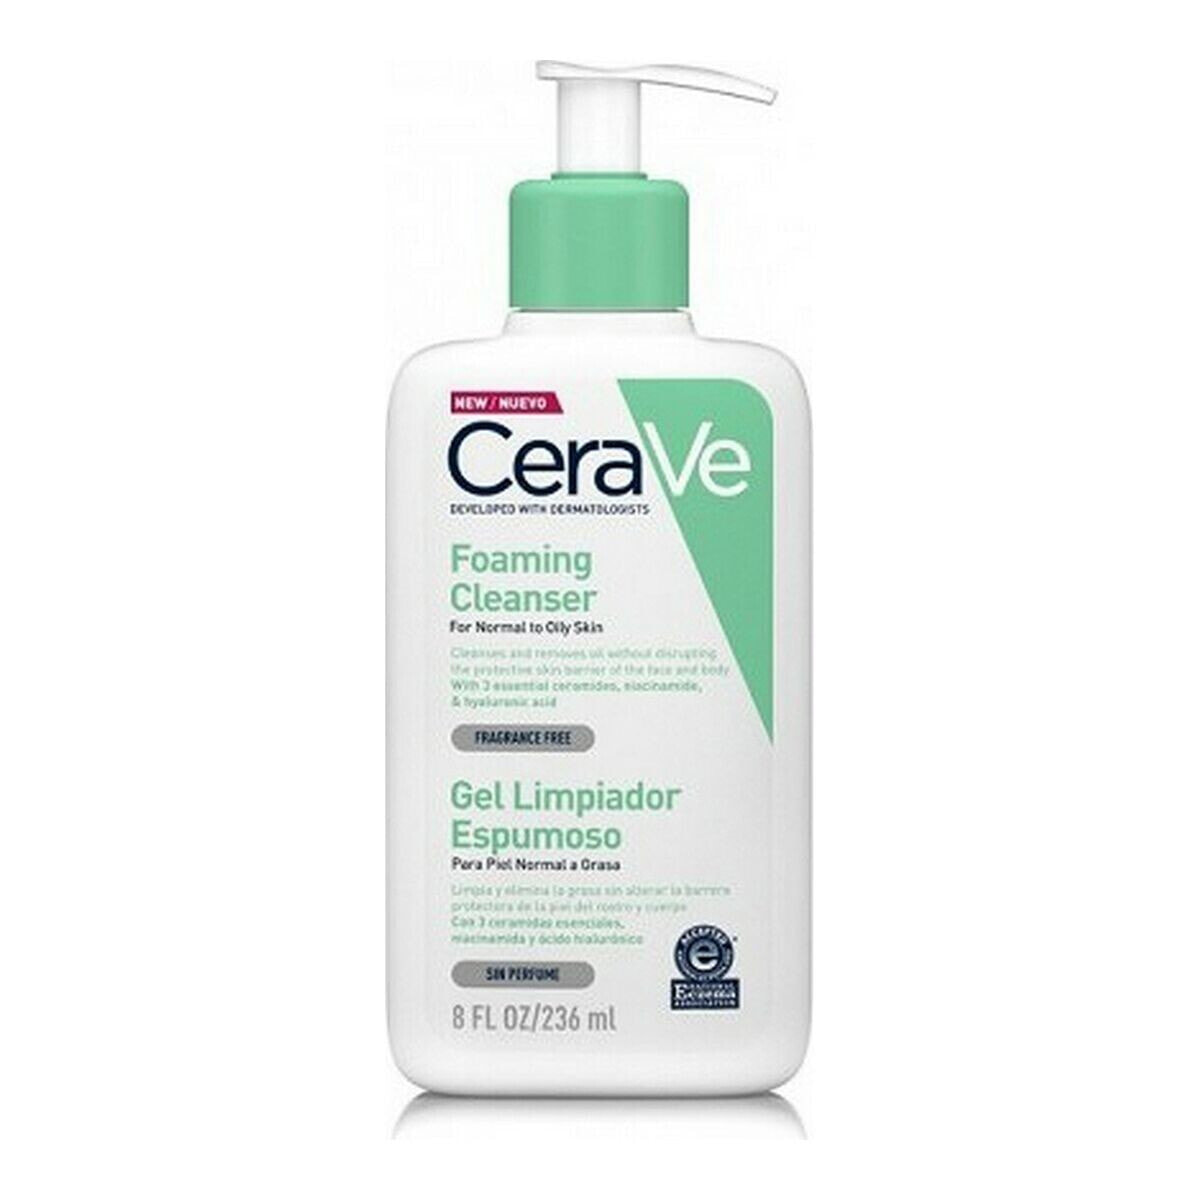 Очищающий пенящийся гель CeraVe Foaming Cleanser 236 ml